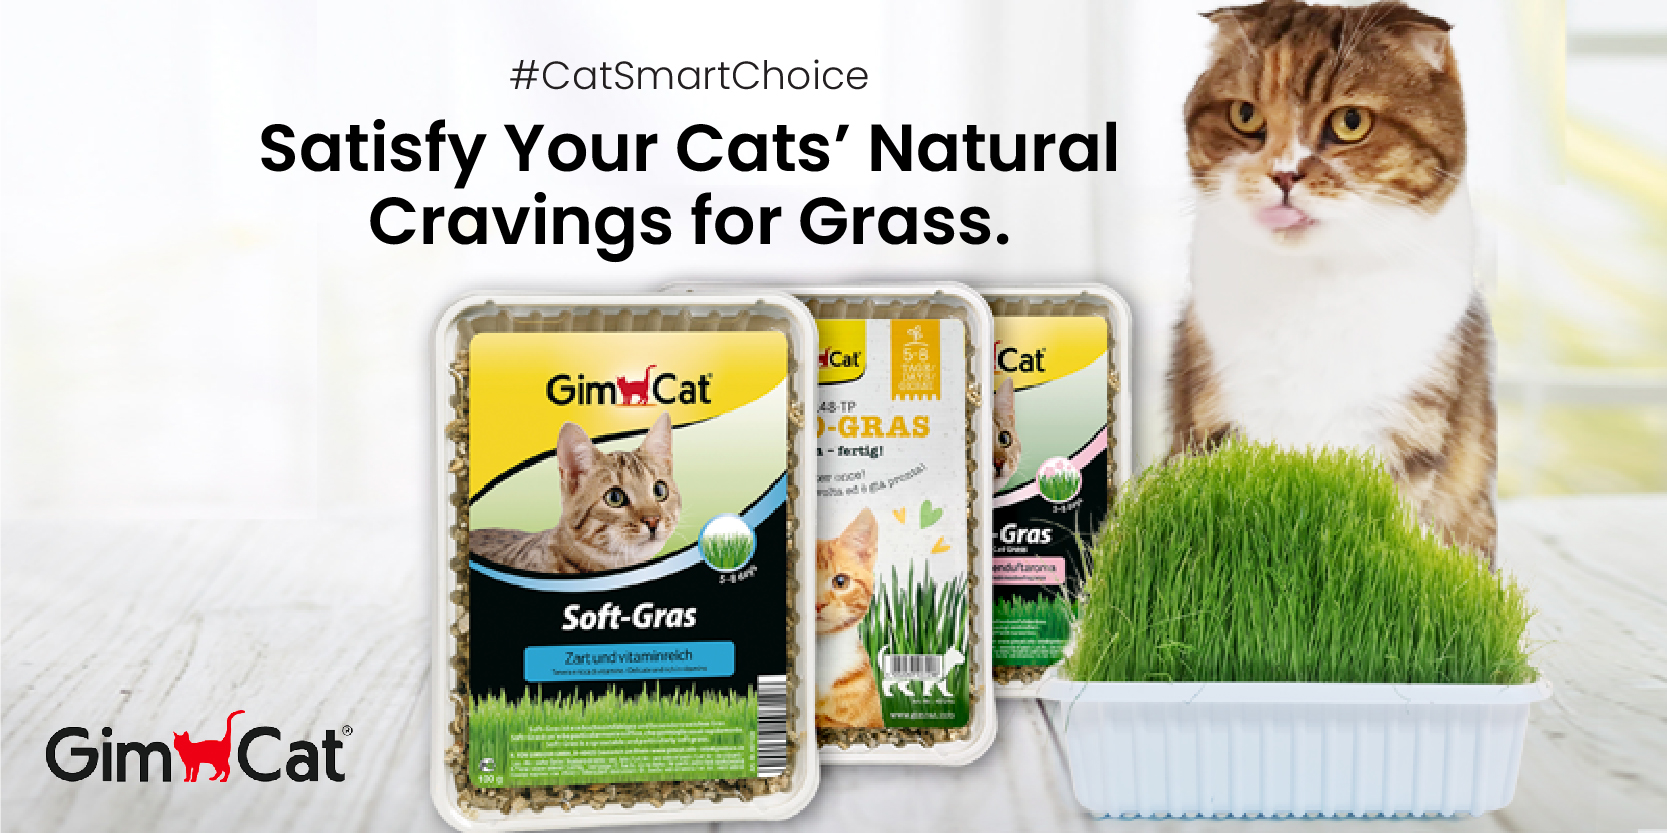 GimCat fresh cat grass series